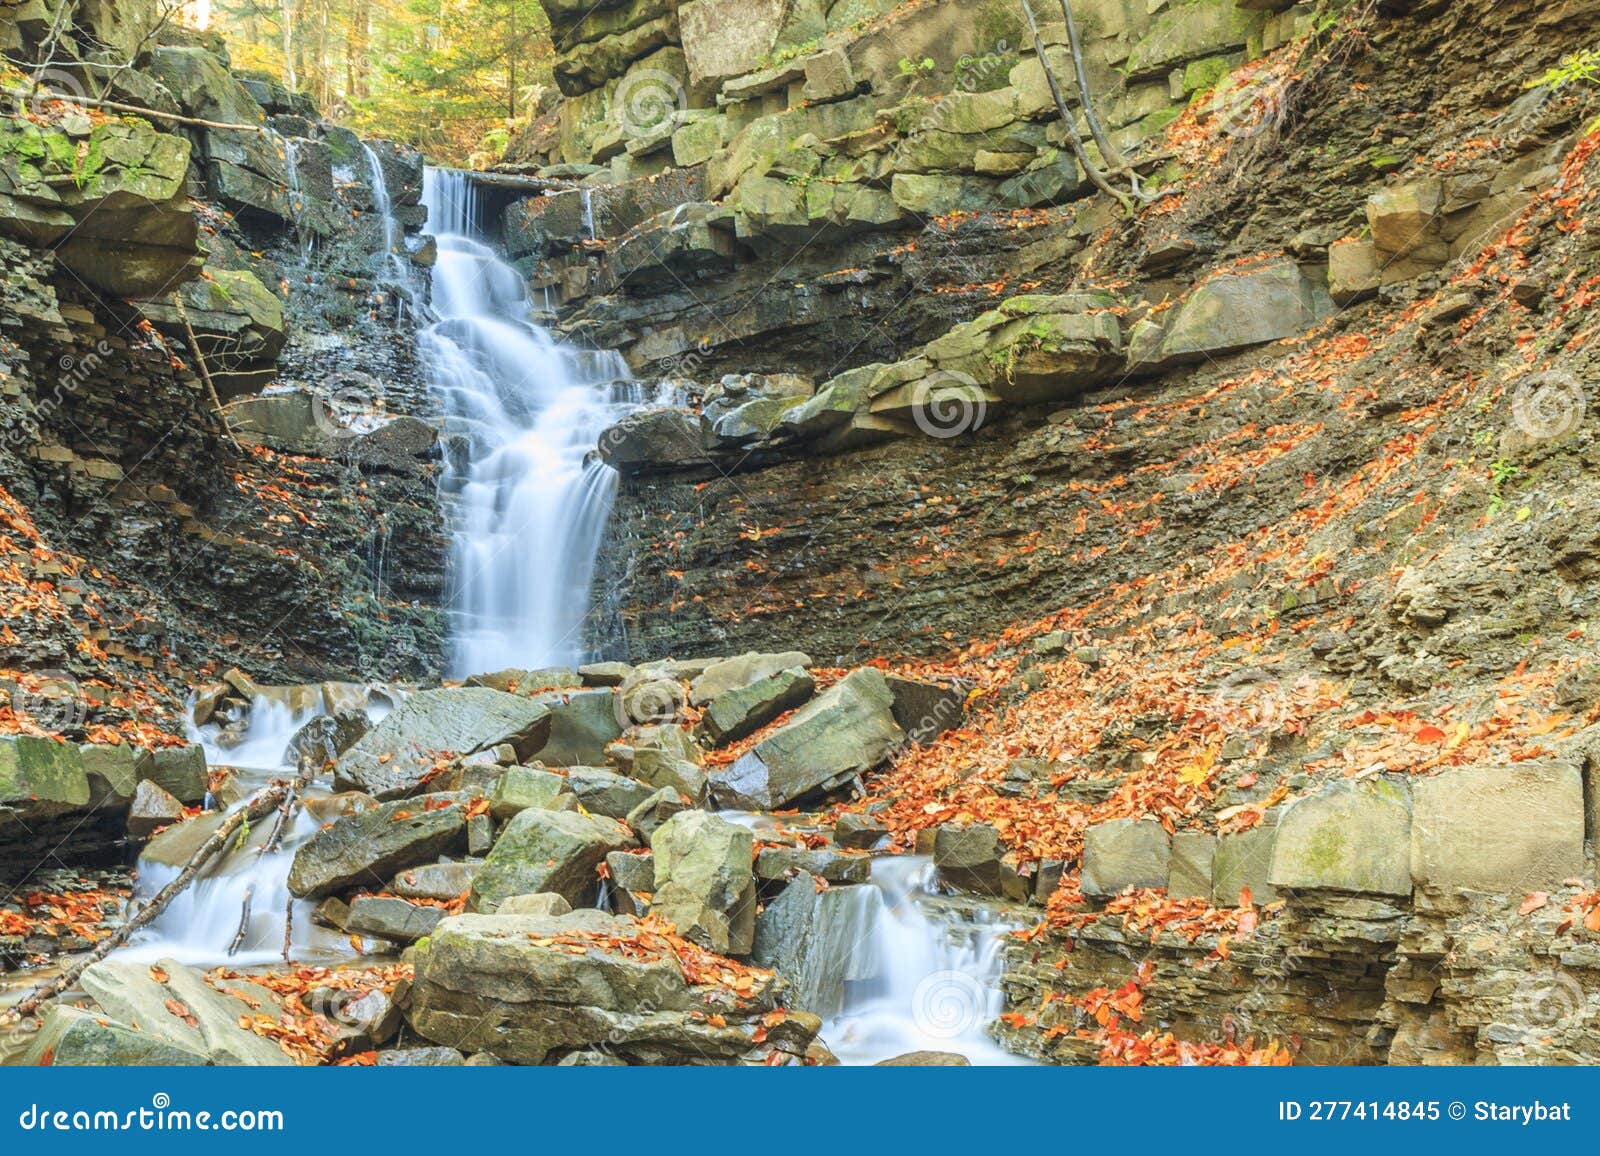 waterfall on mosorny potok in beskid zywiecki, poland